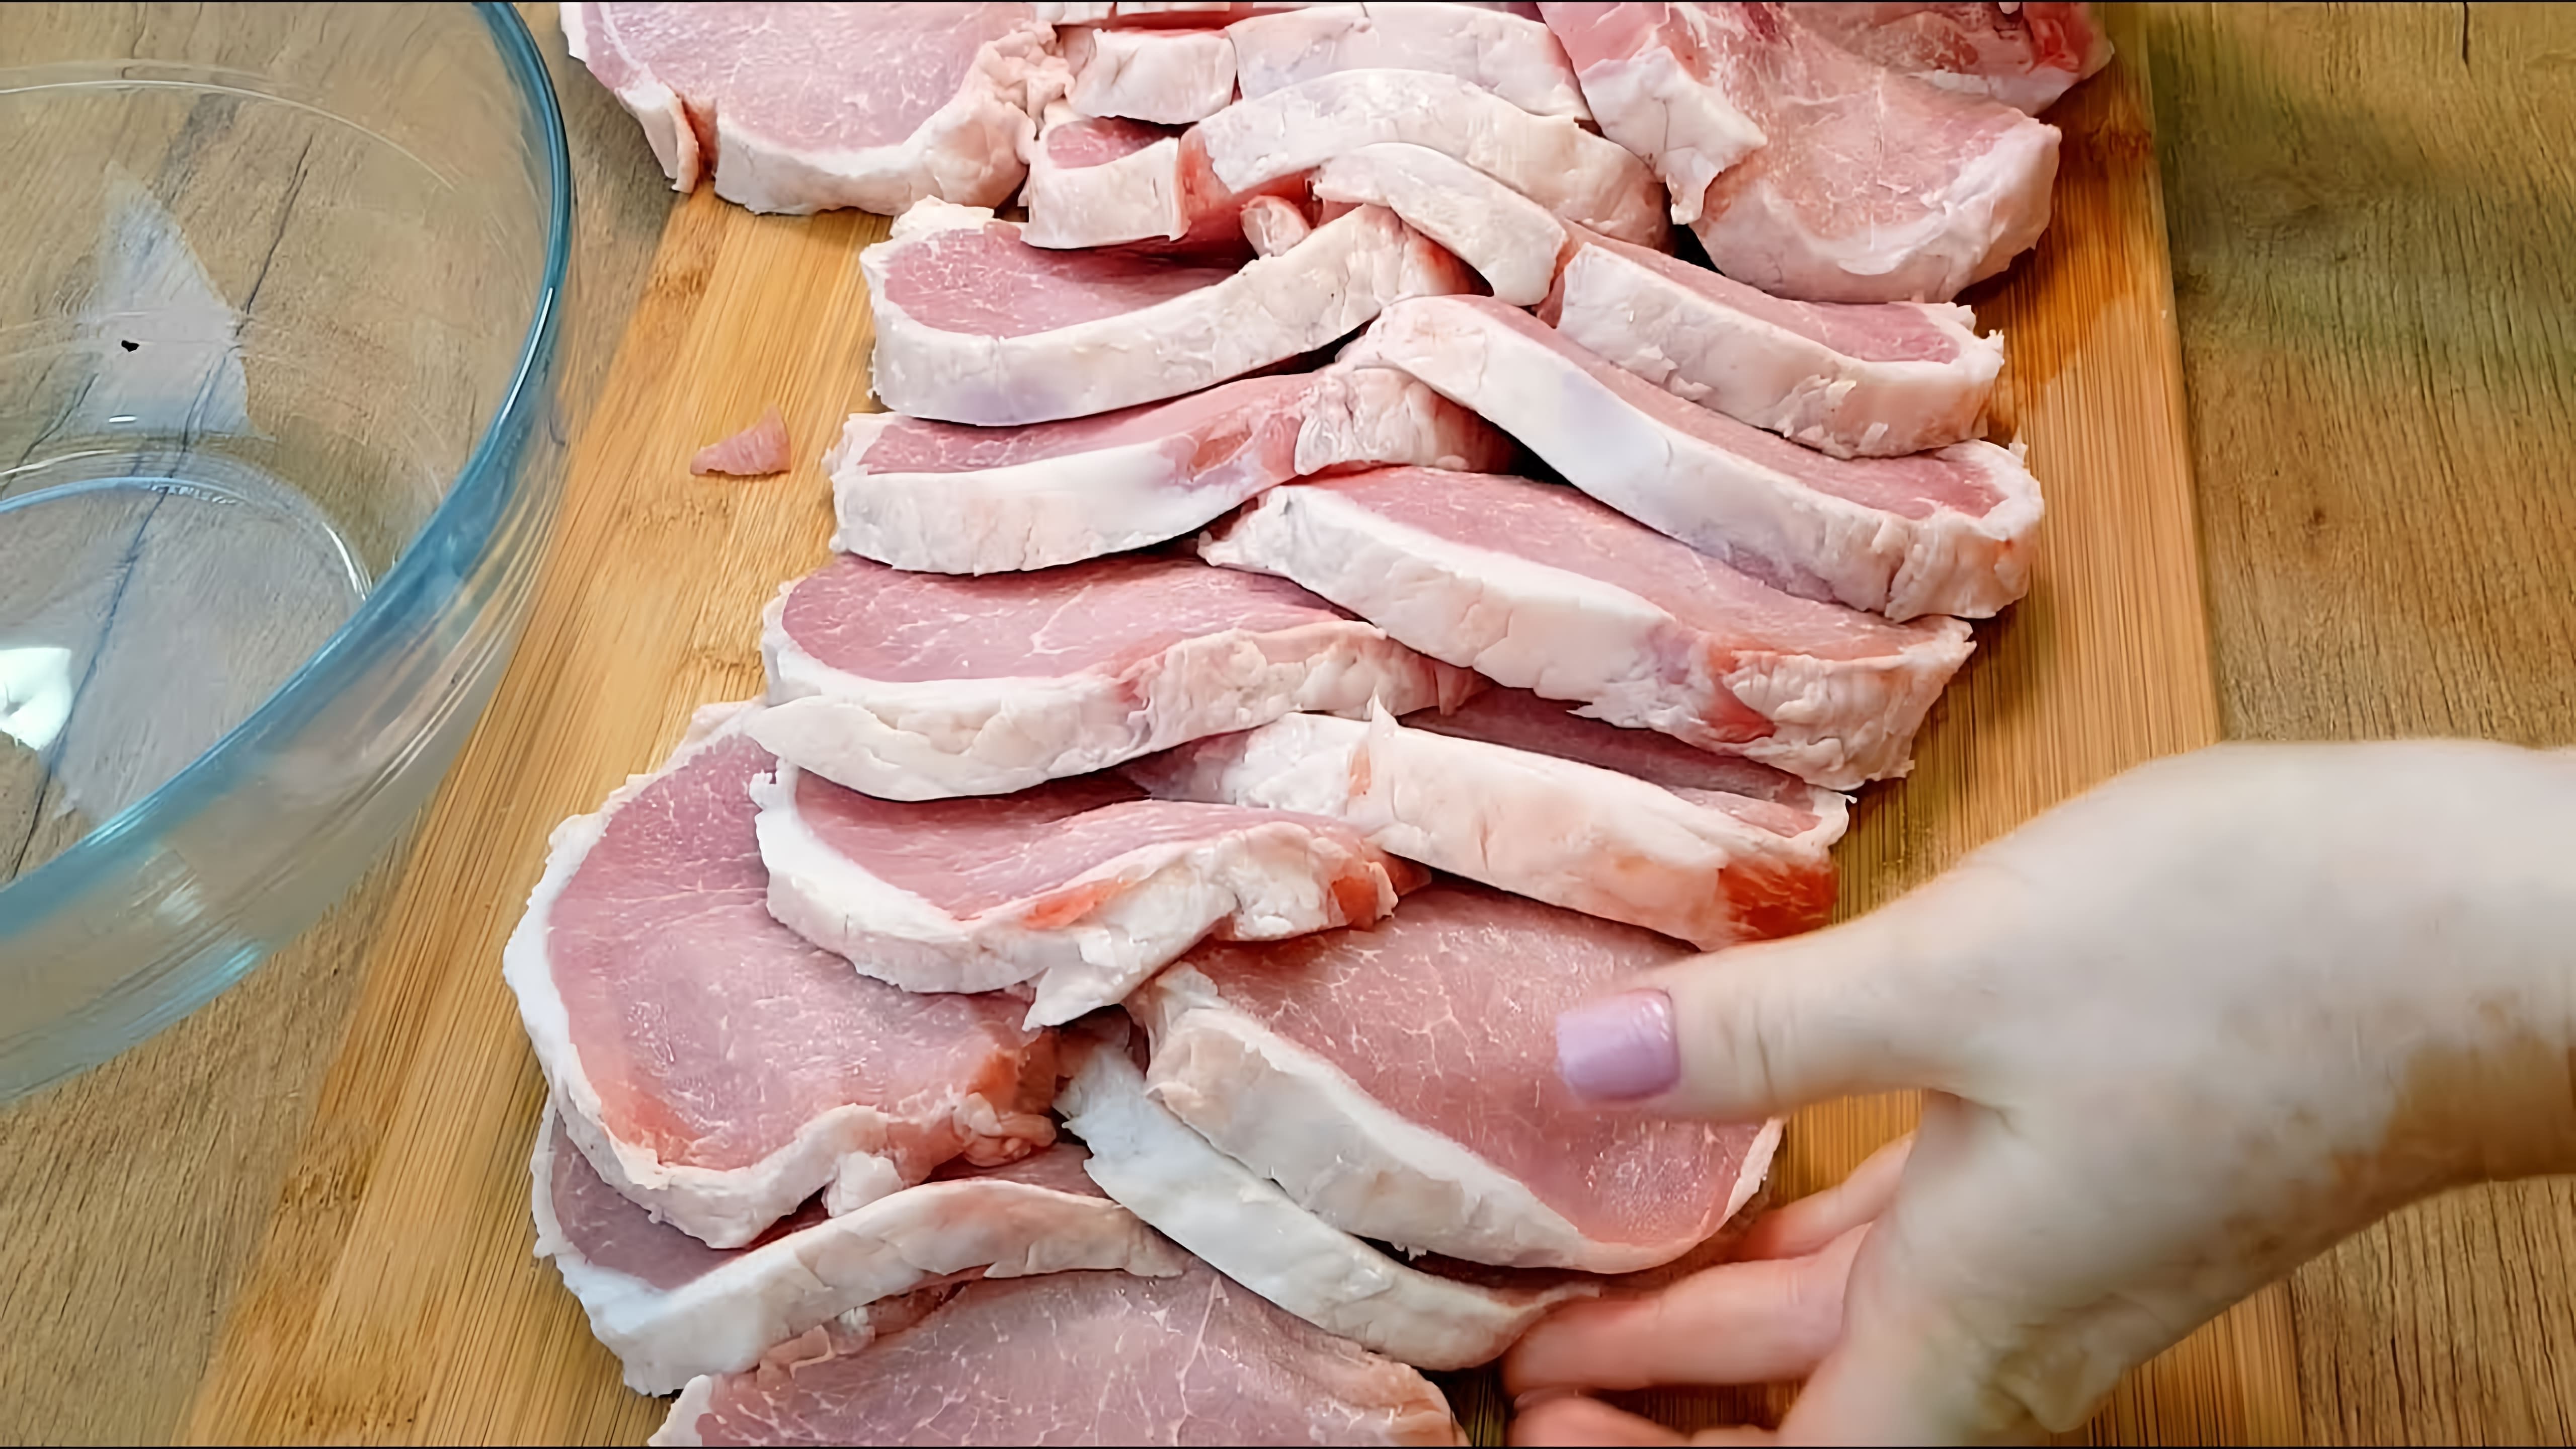 Видео рецепт приготовления мяса в необычном способе, который придает ему совершенно новый и интересный вкус